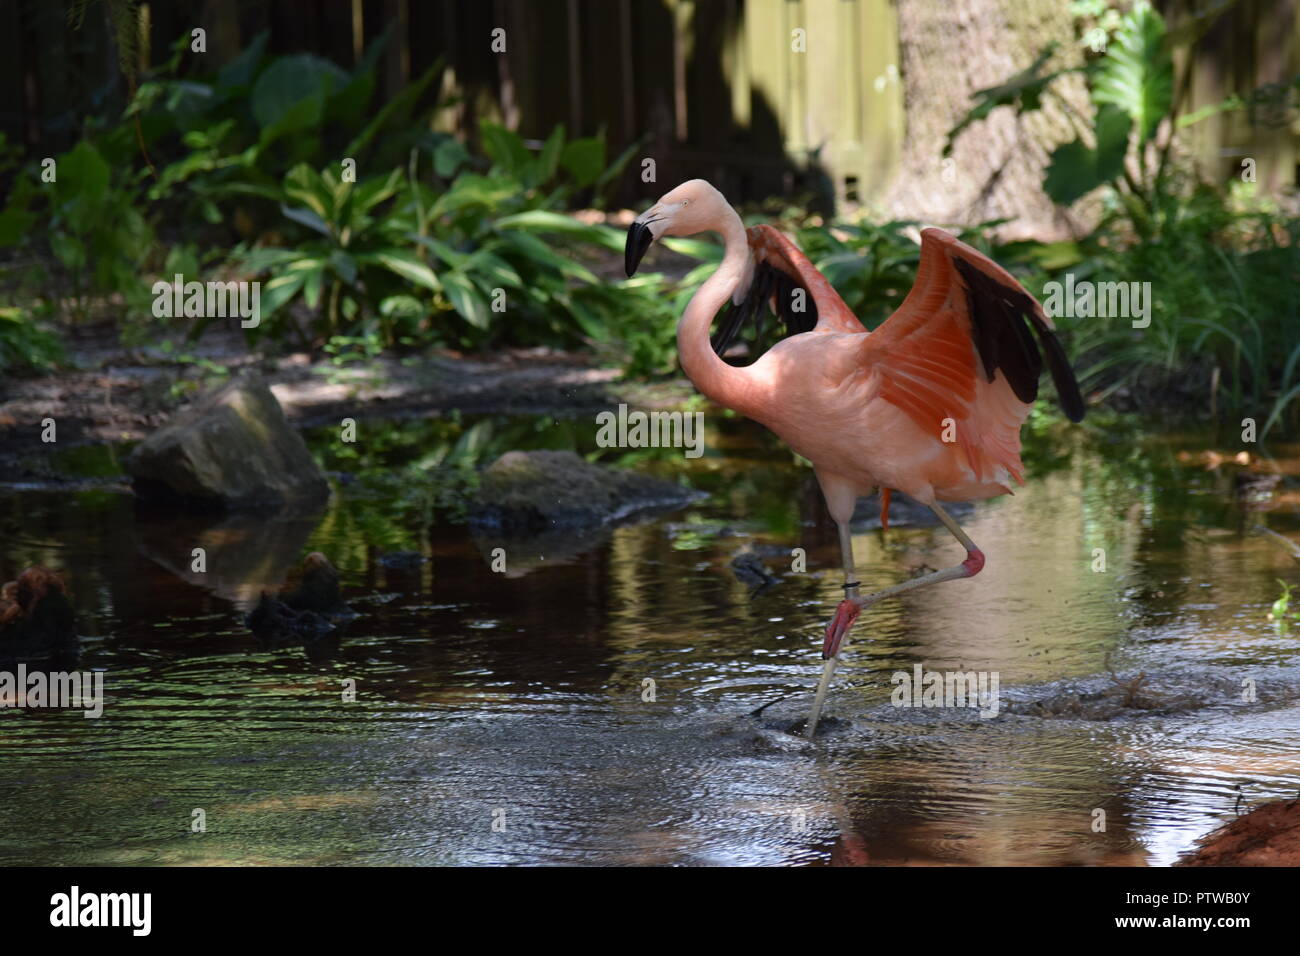 Flamingo/Flamingos Stock Photo